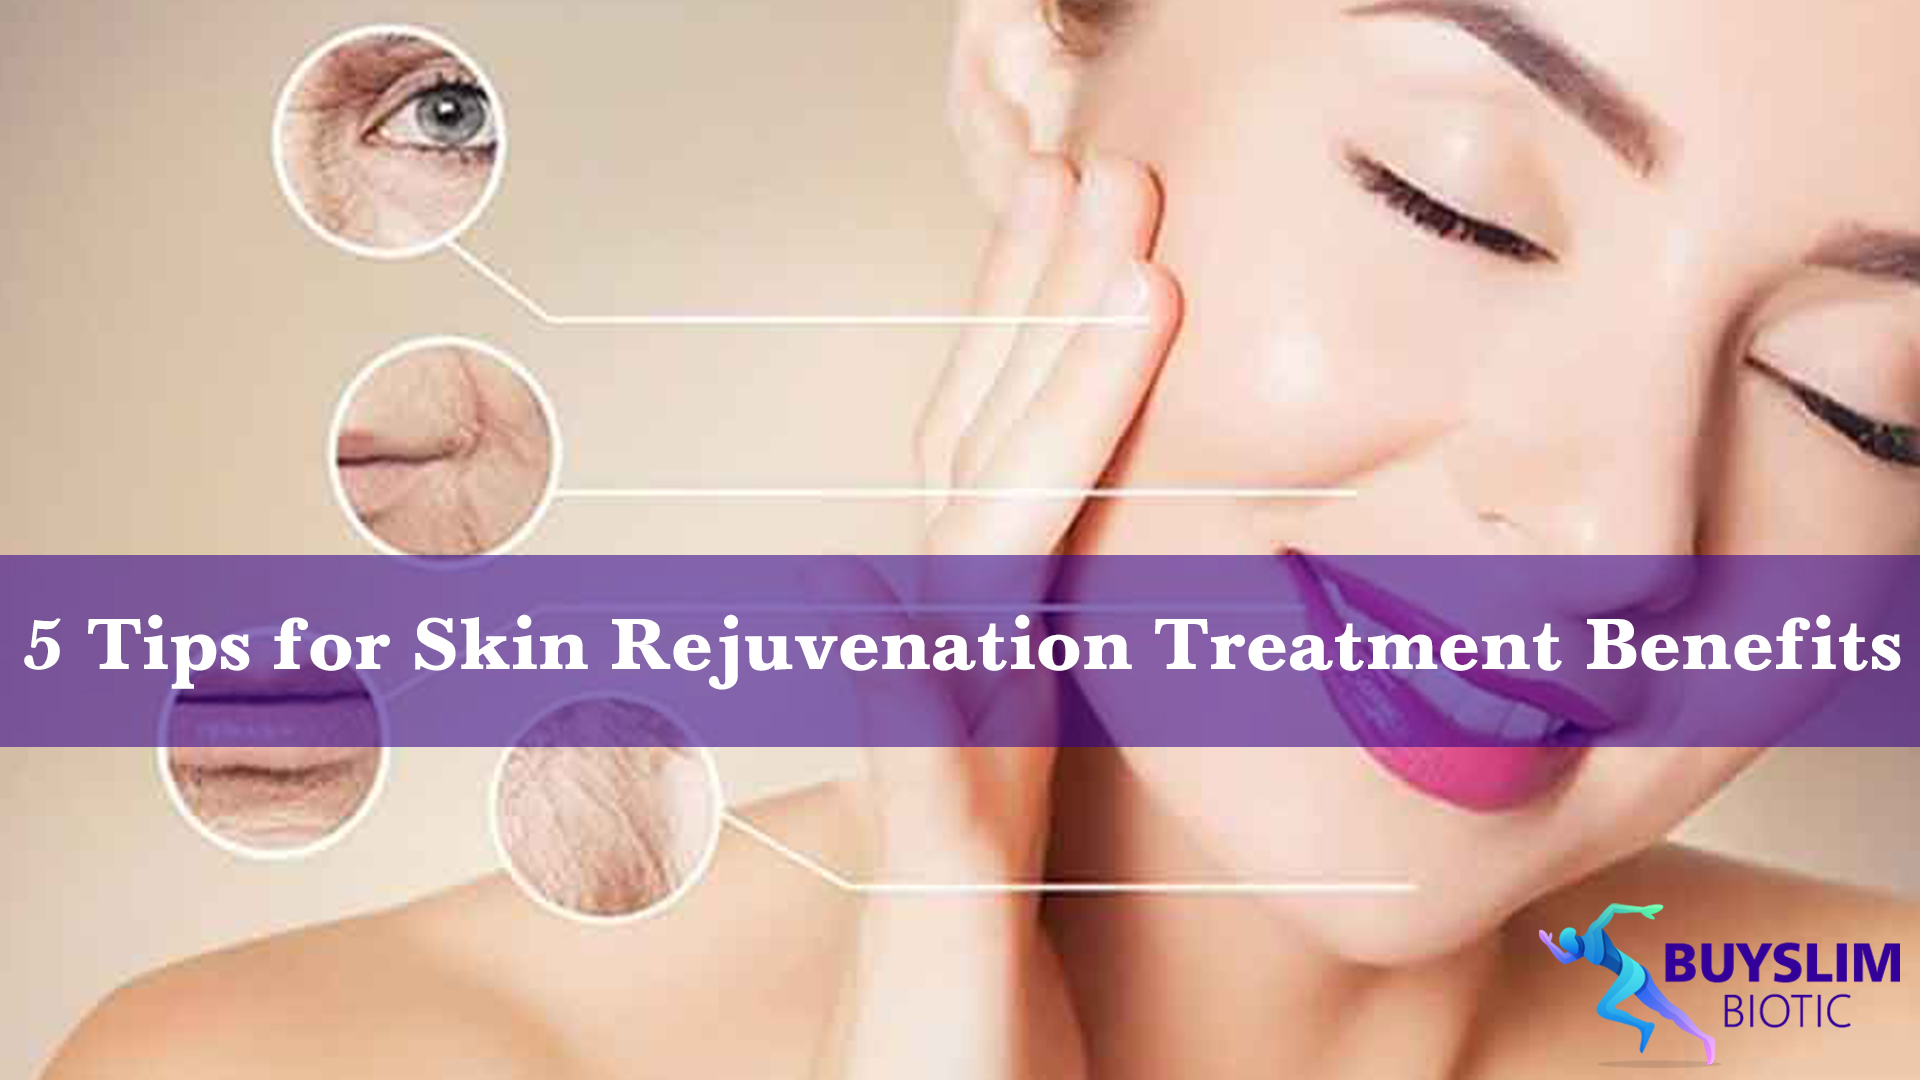 Skin rejuvenation treatment benefits